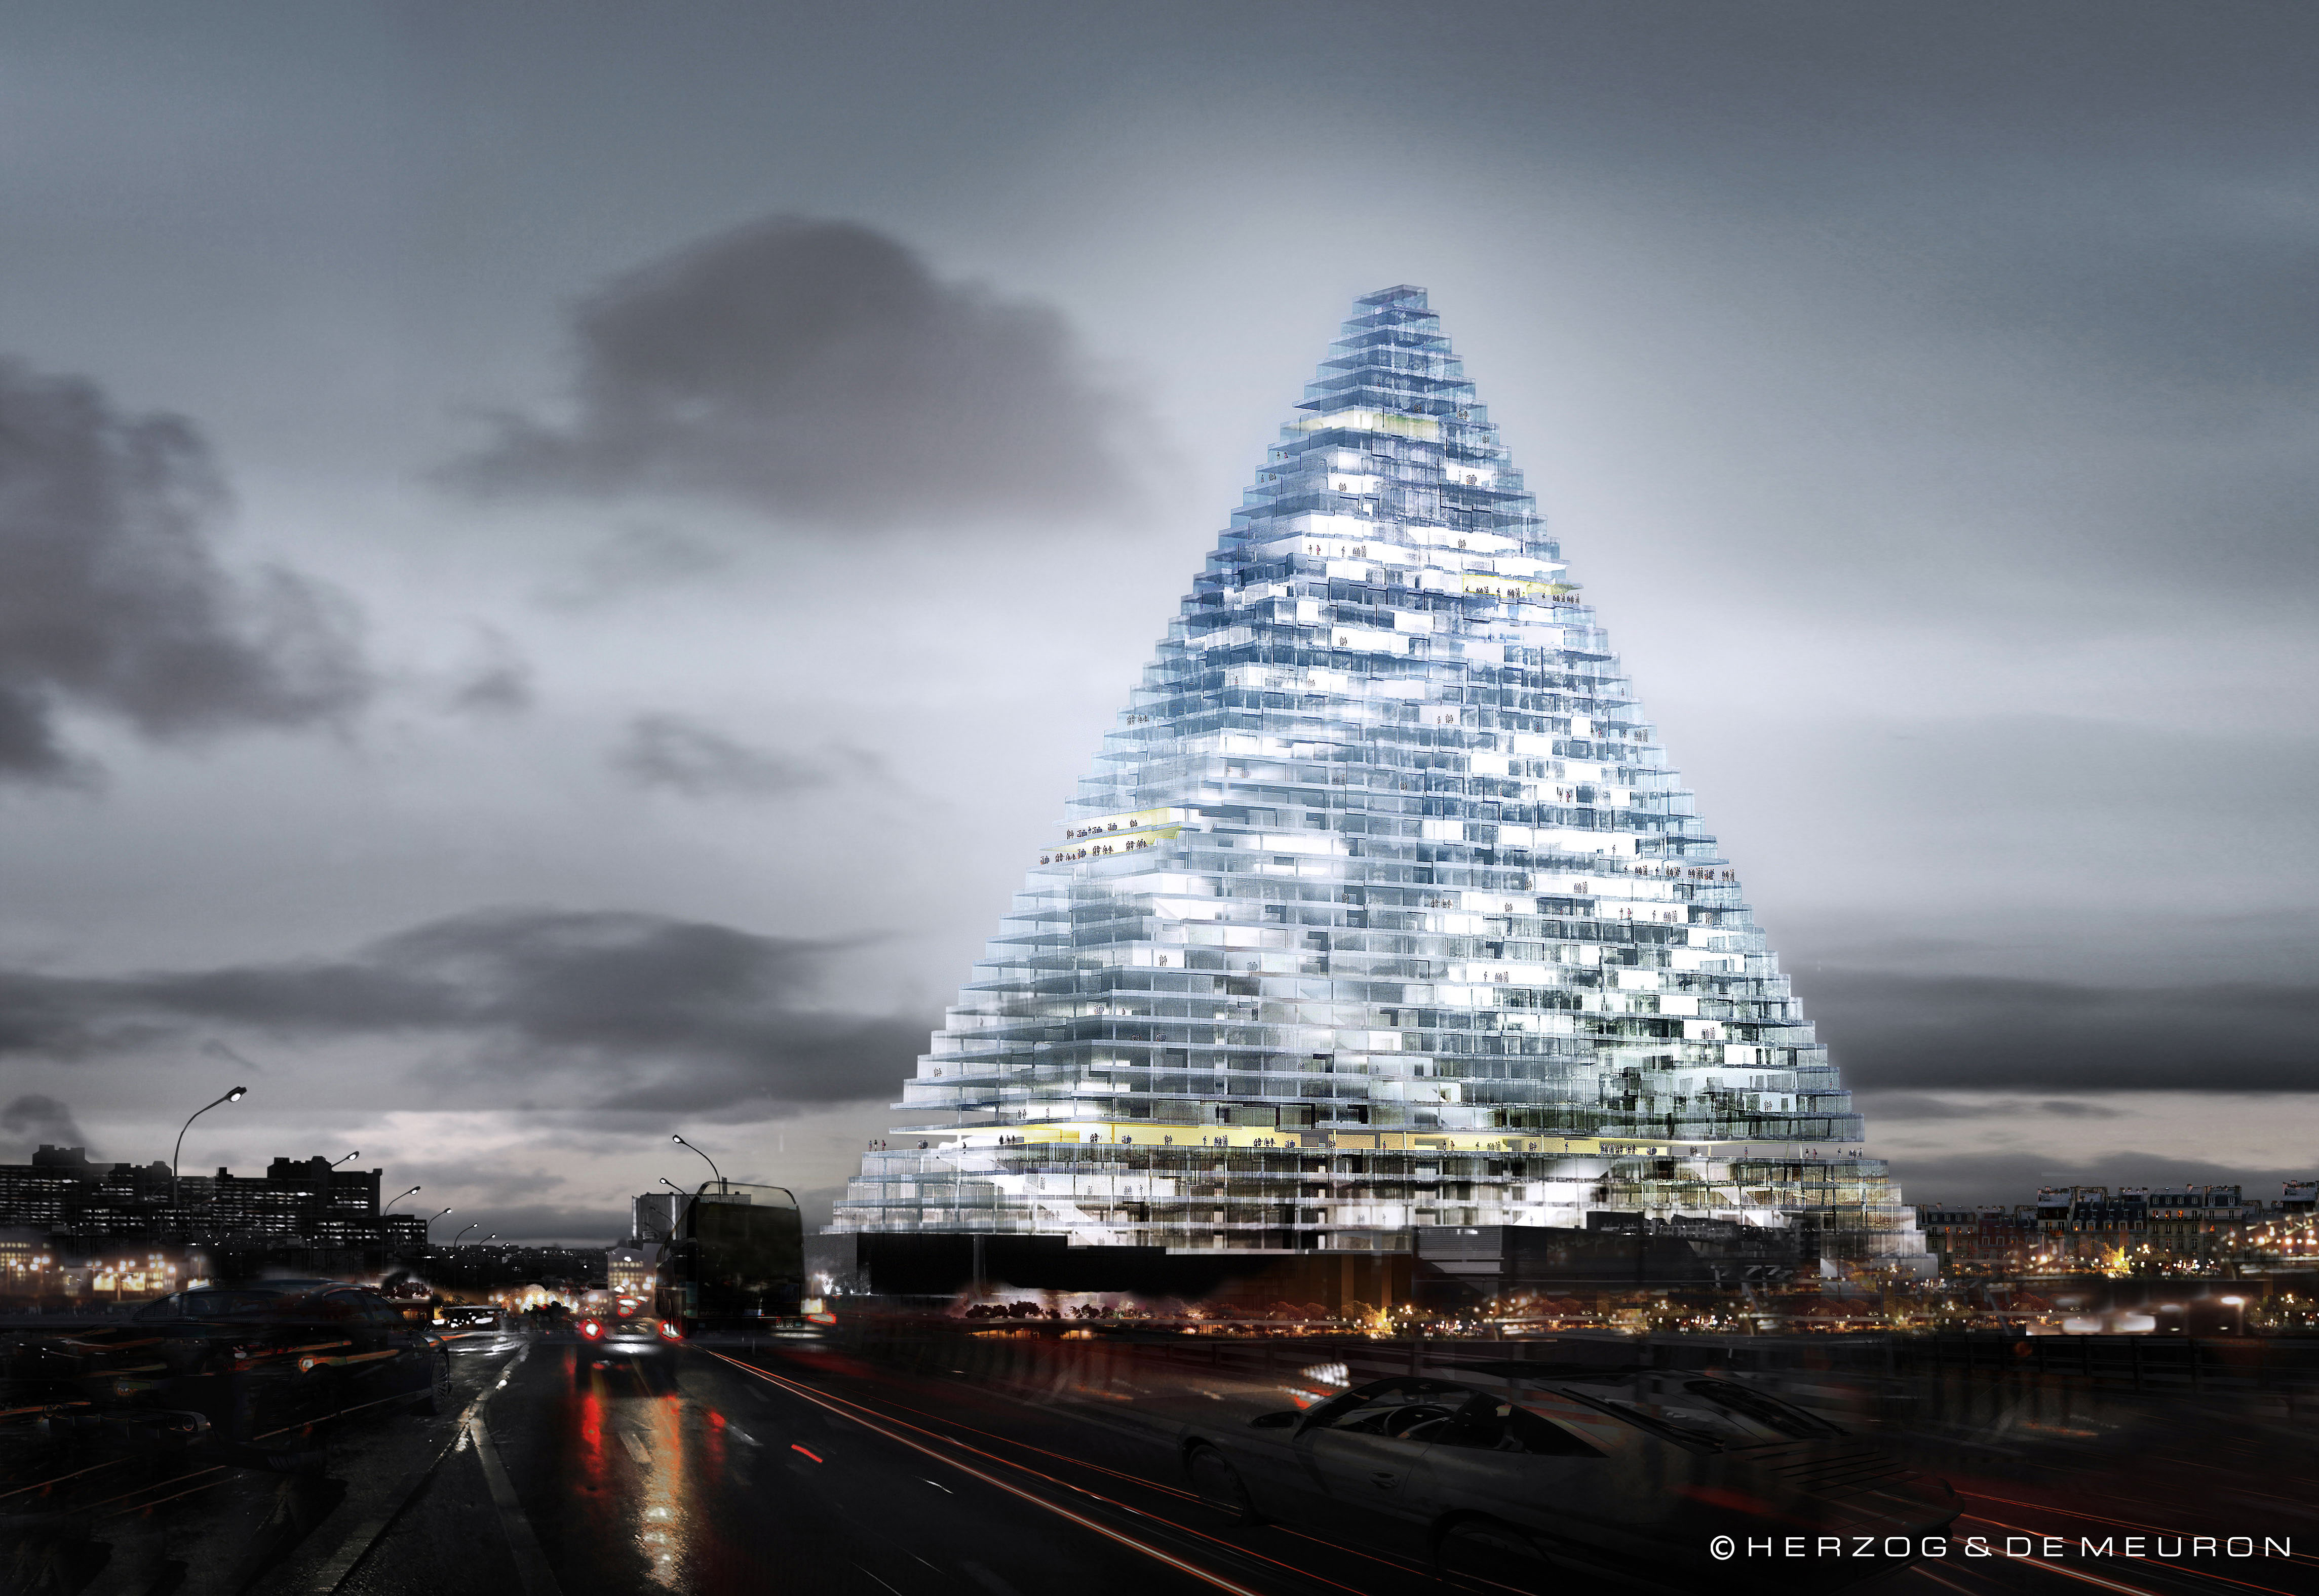 Виды пирамид архитектурные. Triangle Tower в Париже. Треугольное здание во Франции Парижский треугольник. Небоскреб Herzog & de Meuron. Триангл Тауэр башня.